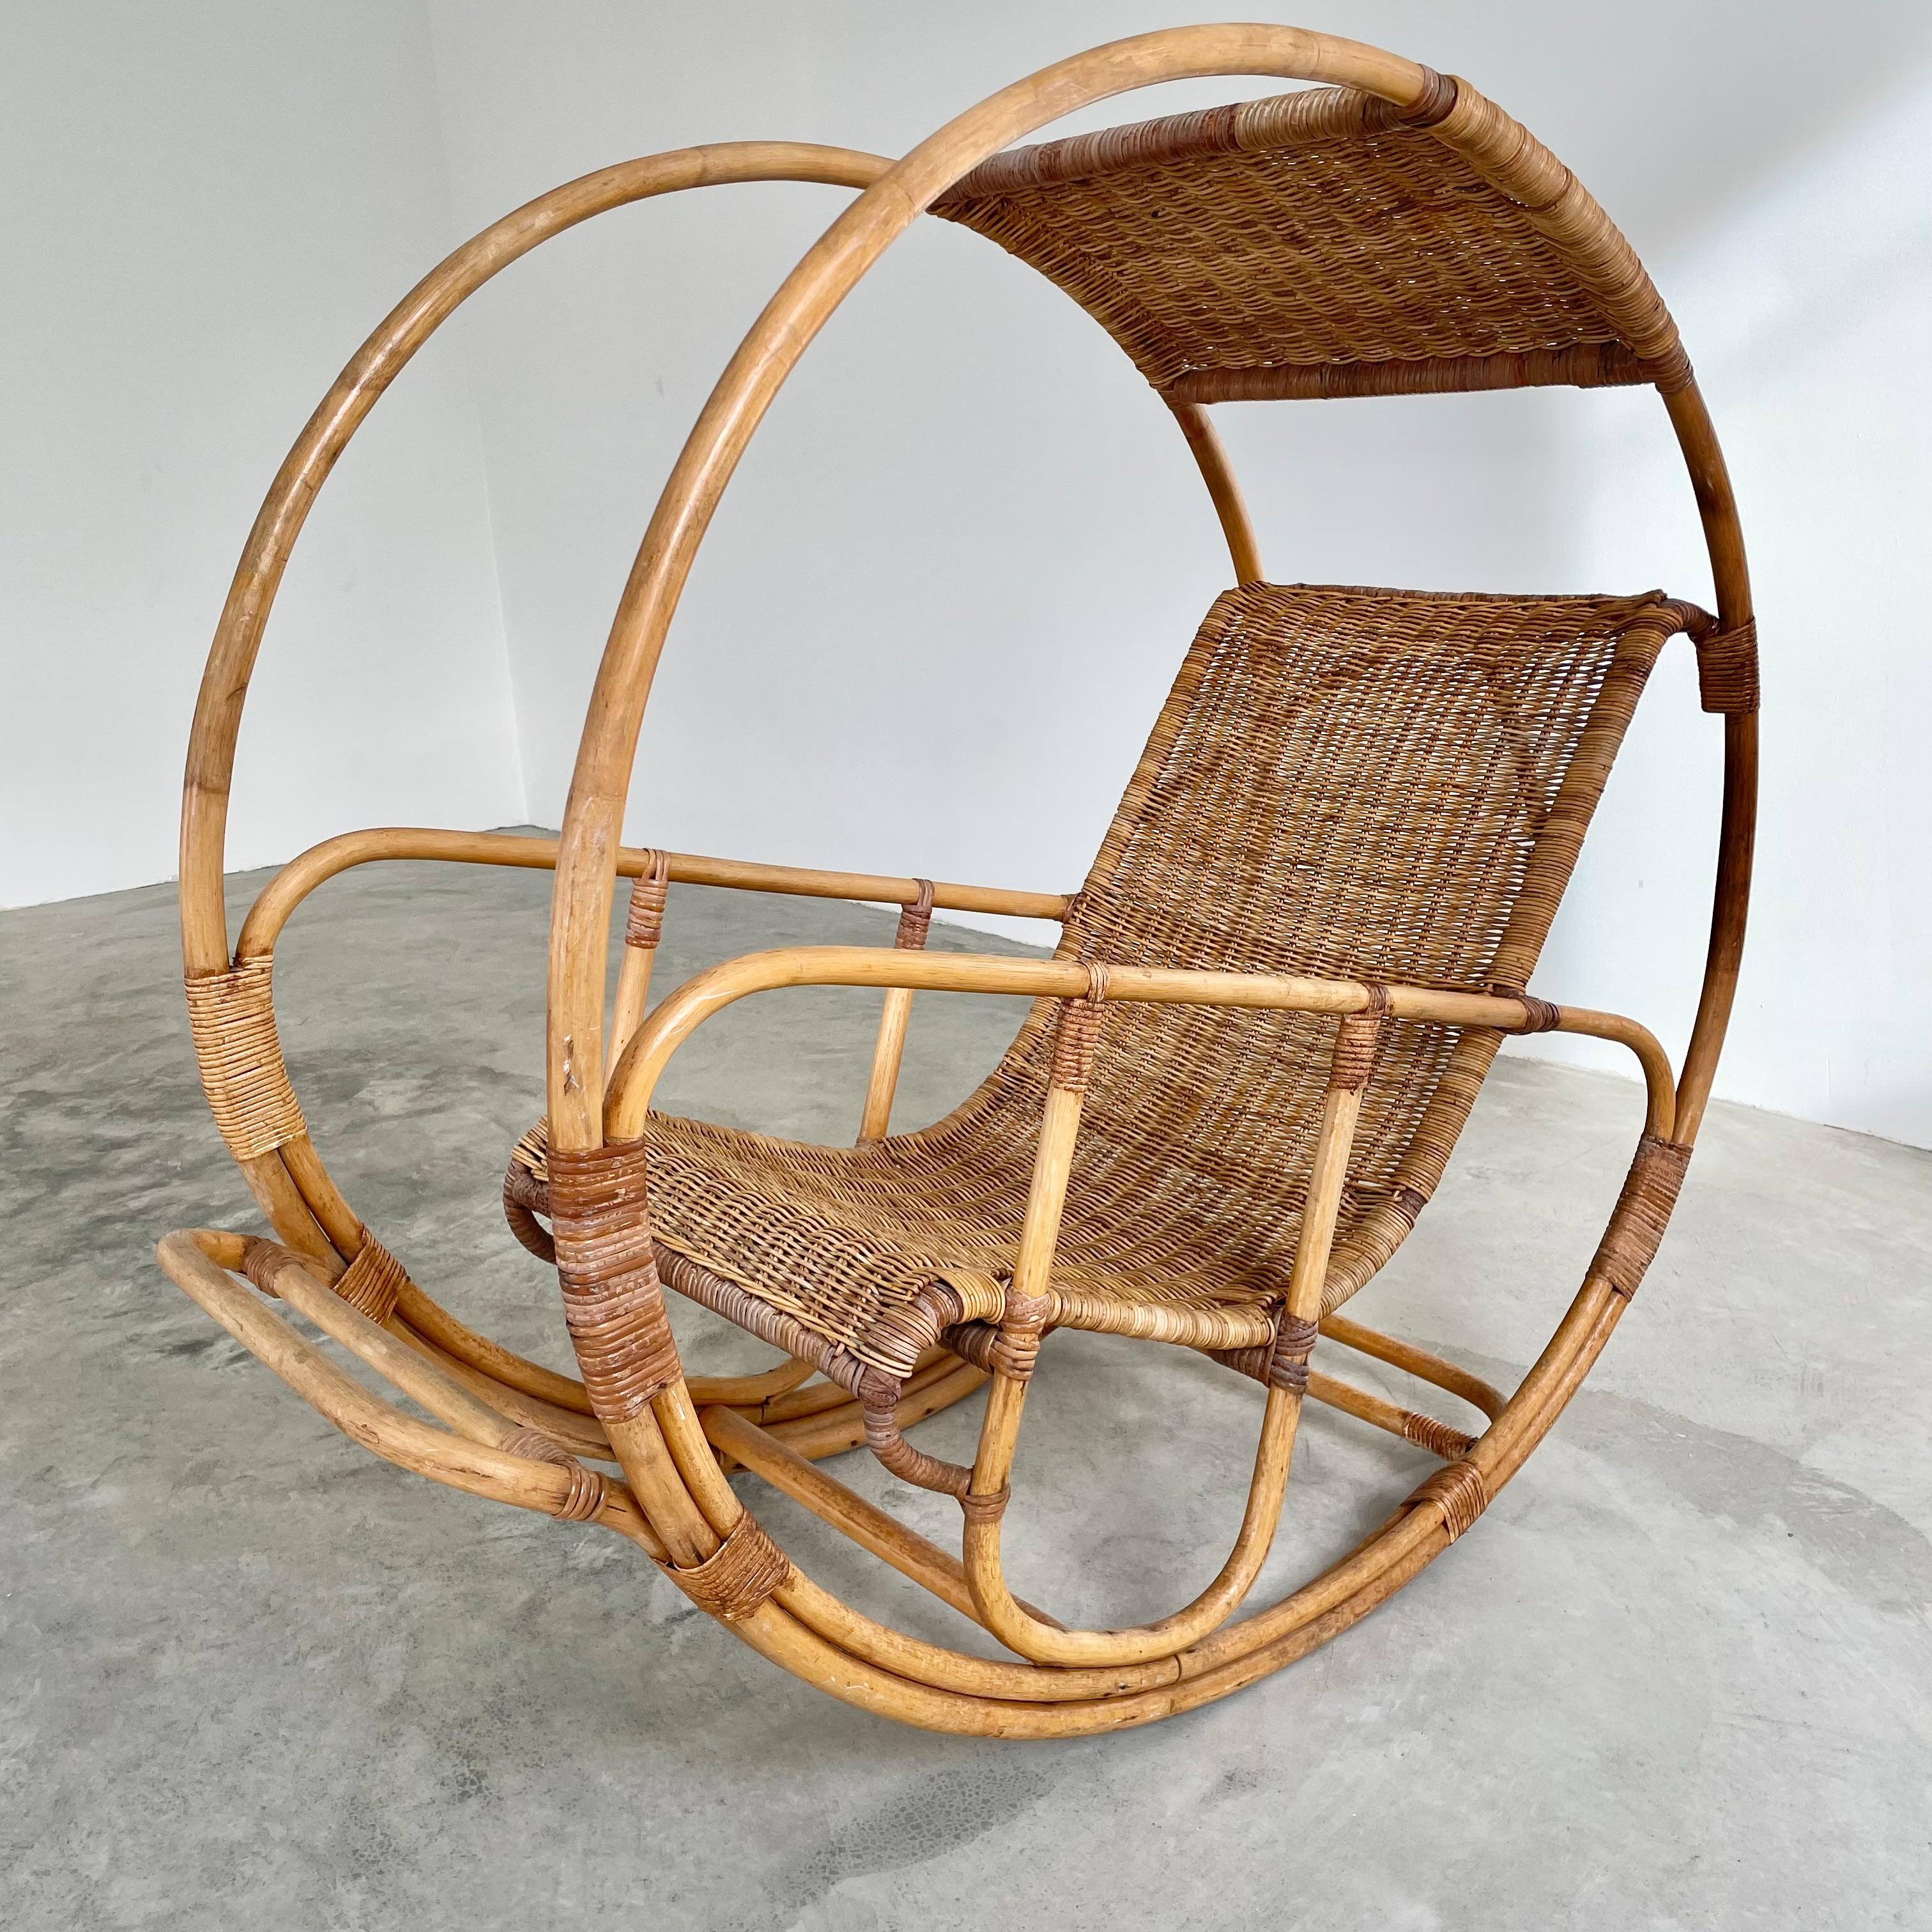 Superbe fauteuil à bascule en rotin inspiré par Franco Bettonica et l'ère spatiale des années 1960. Il a cherché à créer une chaise en utilisant des matériaux naturels traditionnels, mais en les pliant et en les tissant pour leur donner des formes